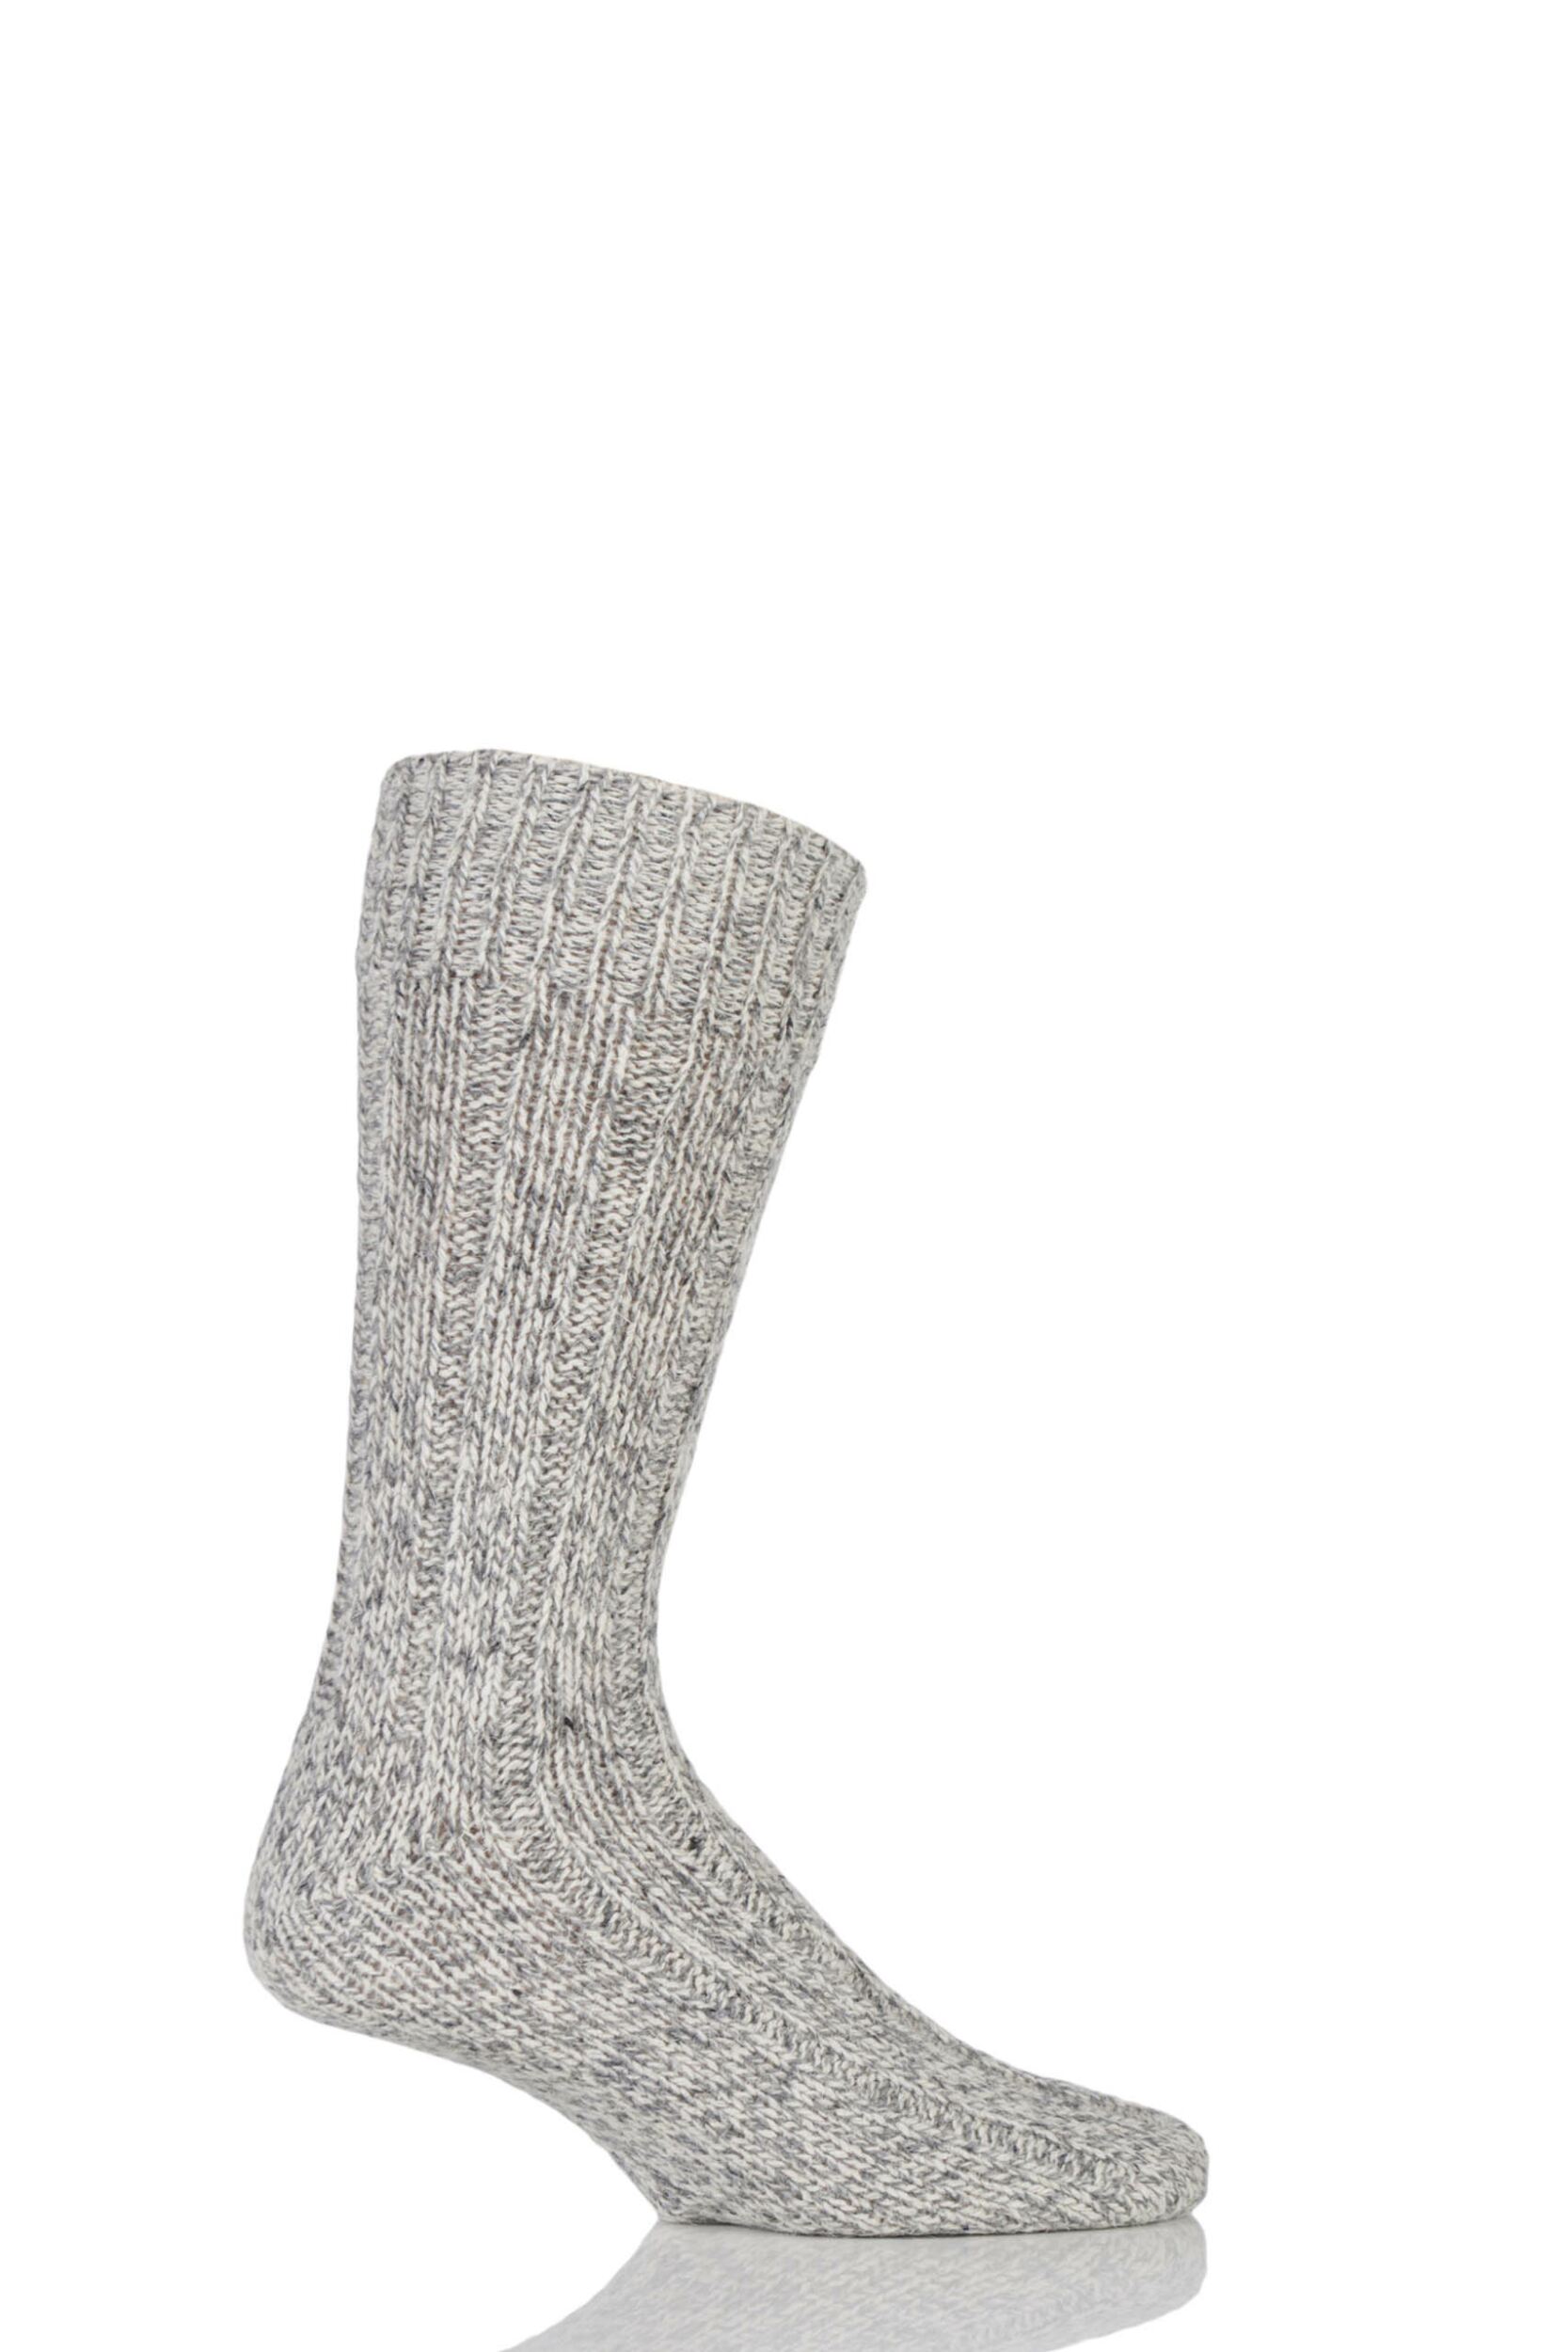 Mens 1 Pair Workforce Wool Rich Heavy Walking Boot Socks | eBay